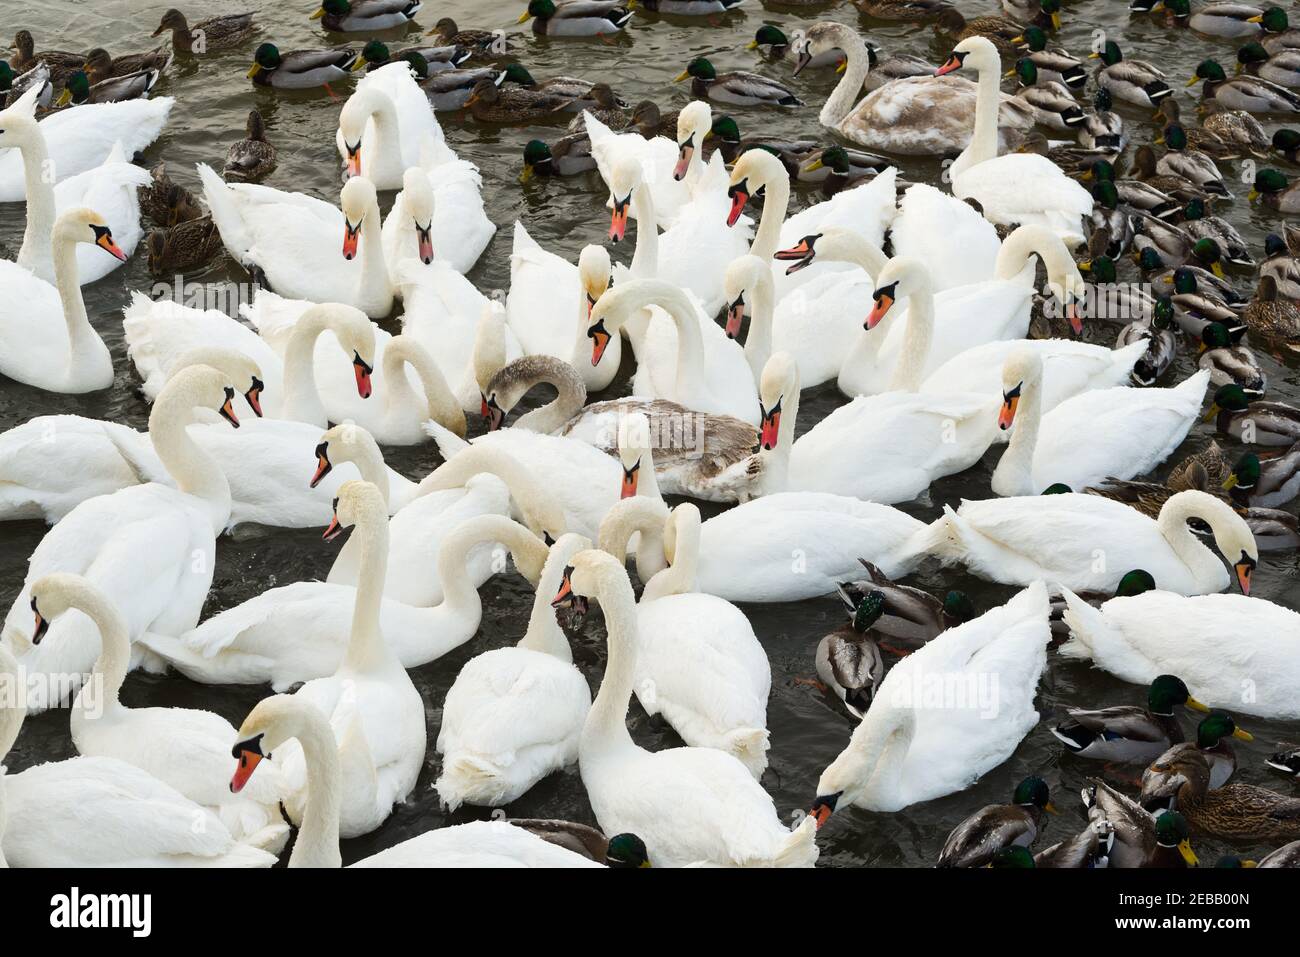 Dans la rivière Nemunas, la Lituanie possède la plus grande colonie d'oiseaux aquatiques hivernant, de cygnes, de canards et d'autres oiseaux aquatiques. Banque D'Images